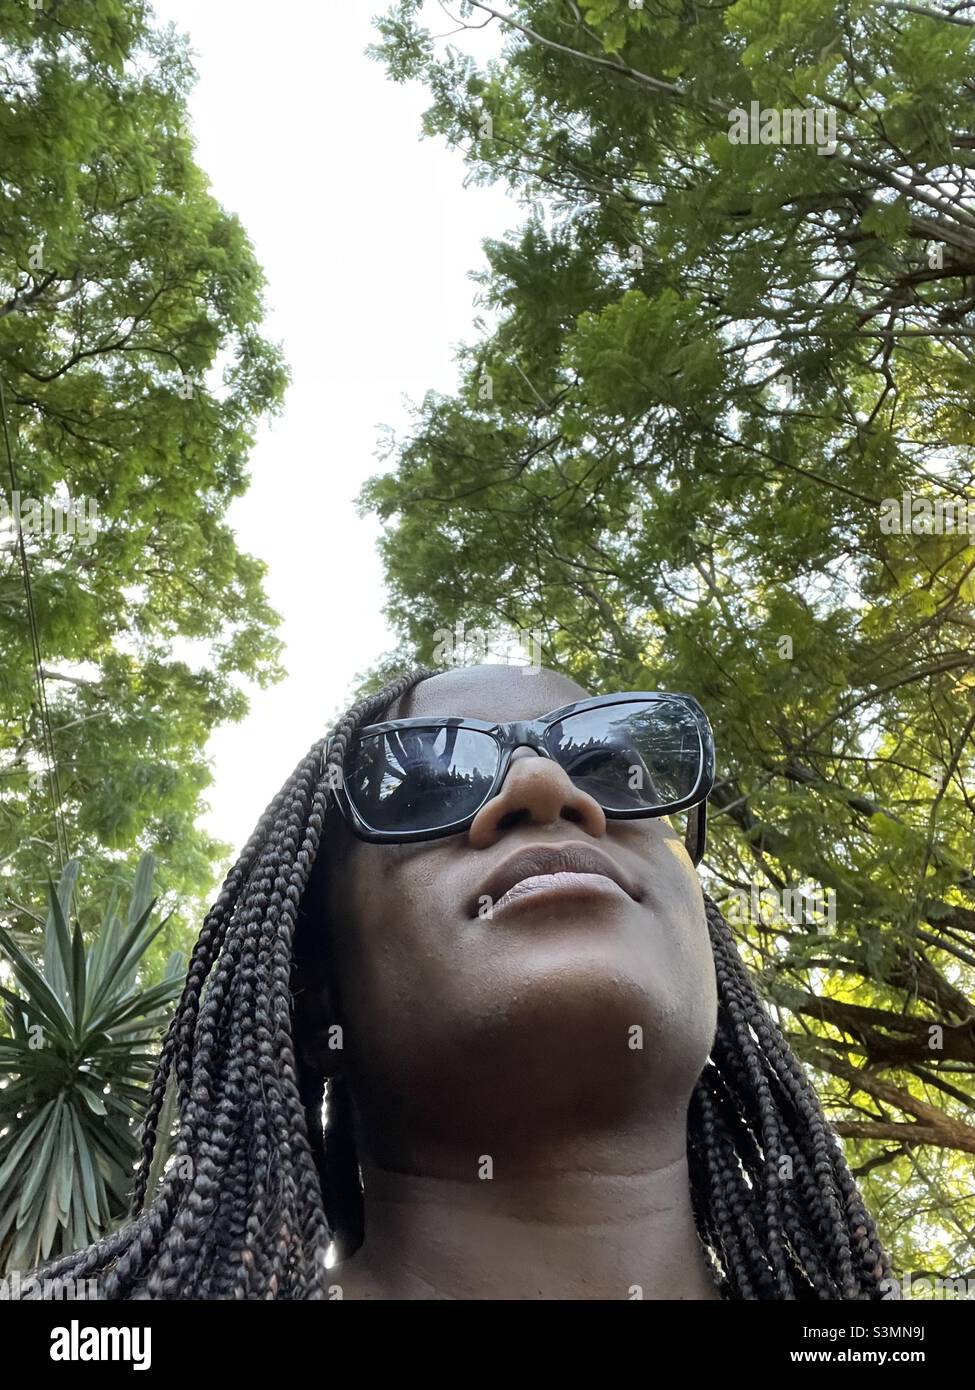 Selfie, peau brune, femme noire, ciel bordé d'arbres, romain noir dans des lunettes de soleil Banque D'Images